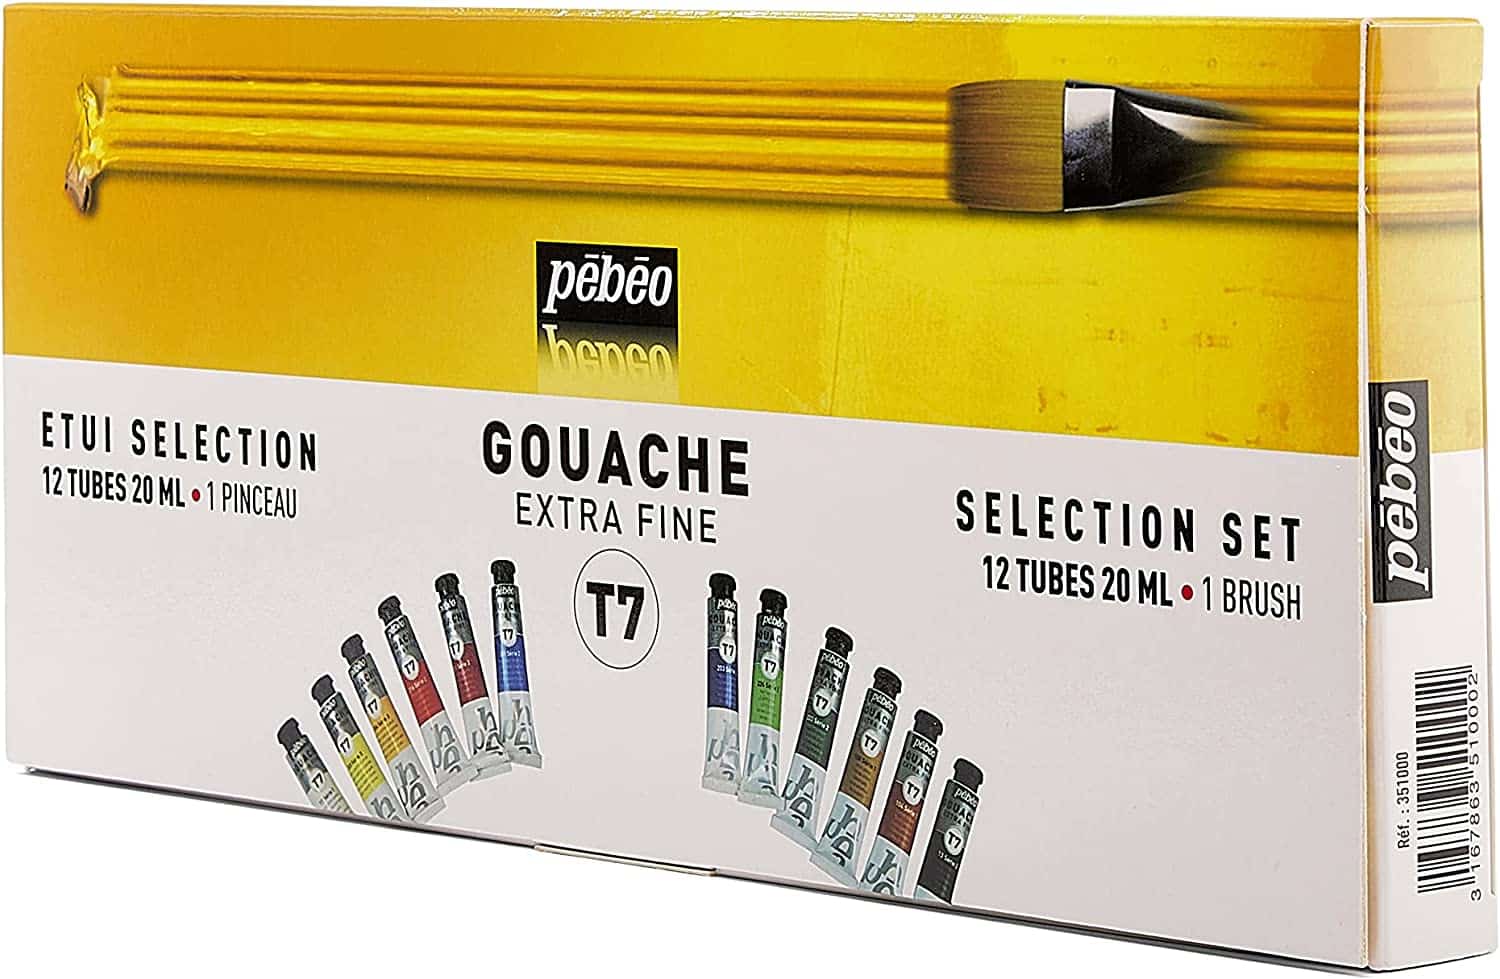 Pébéo Case with Gouache Paint box